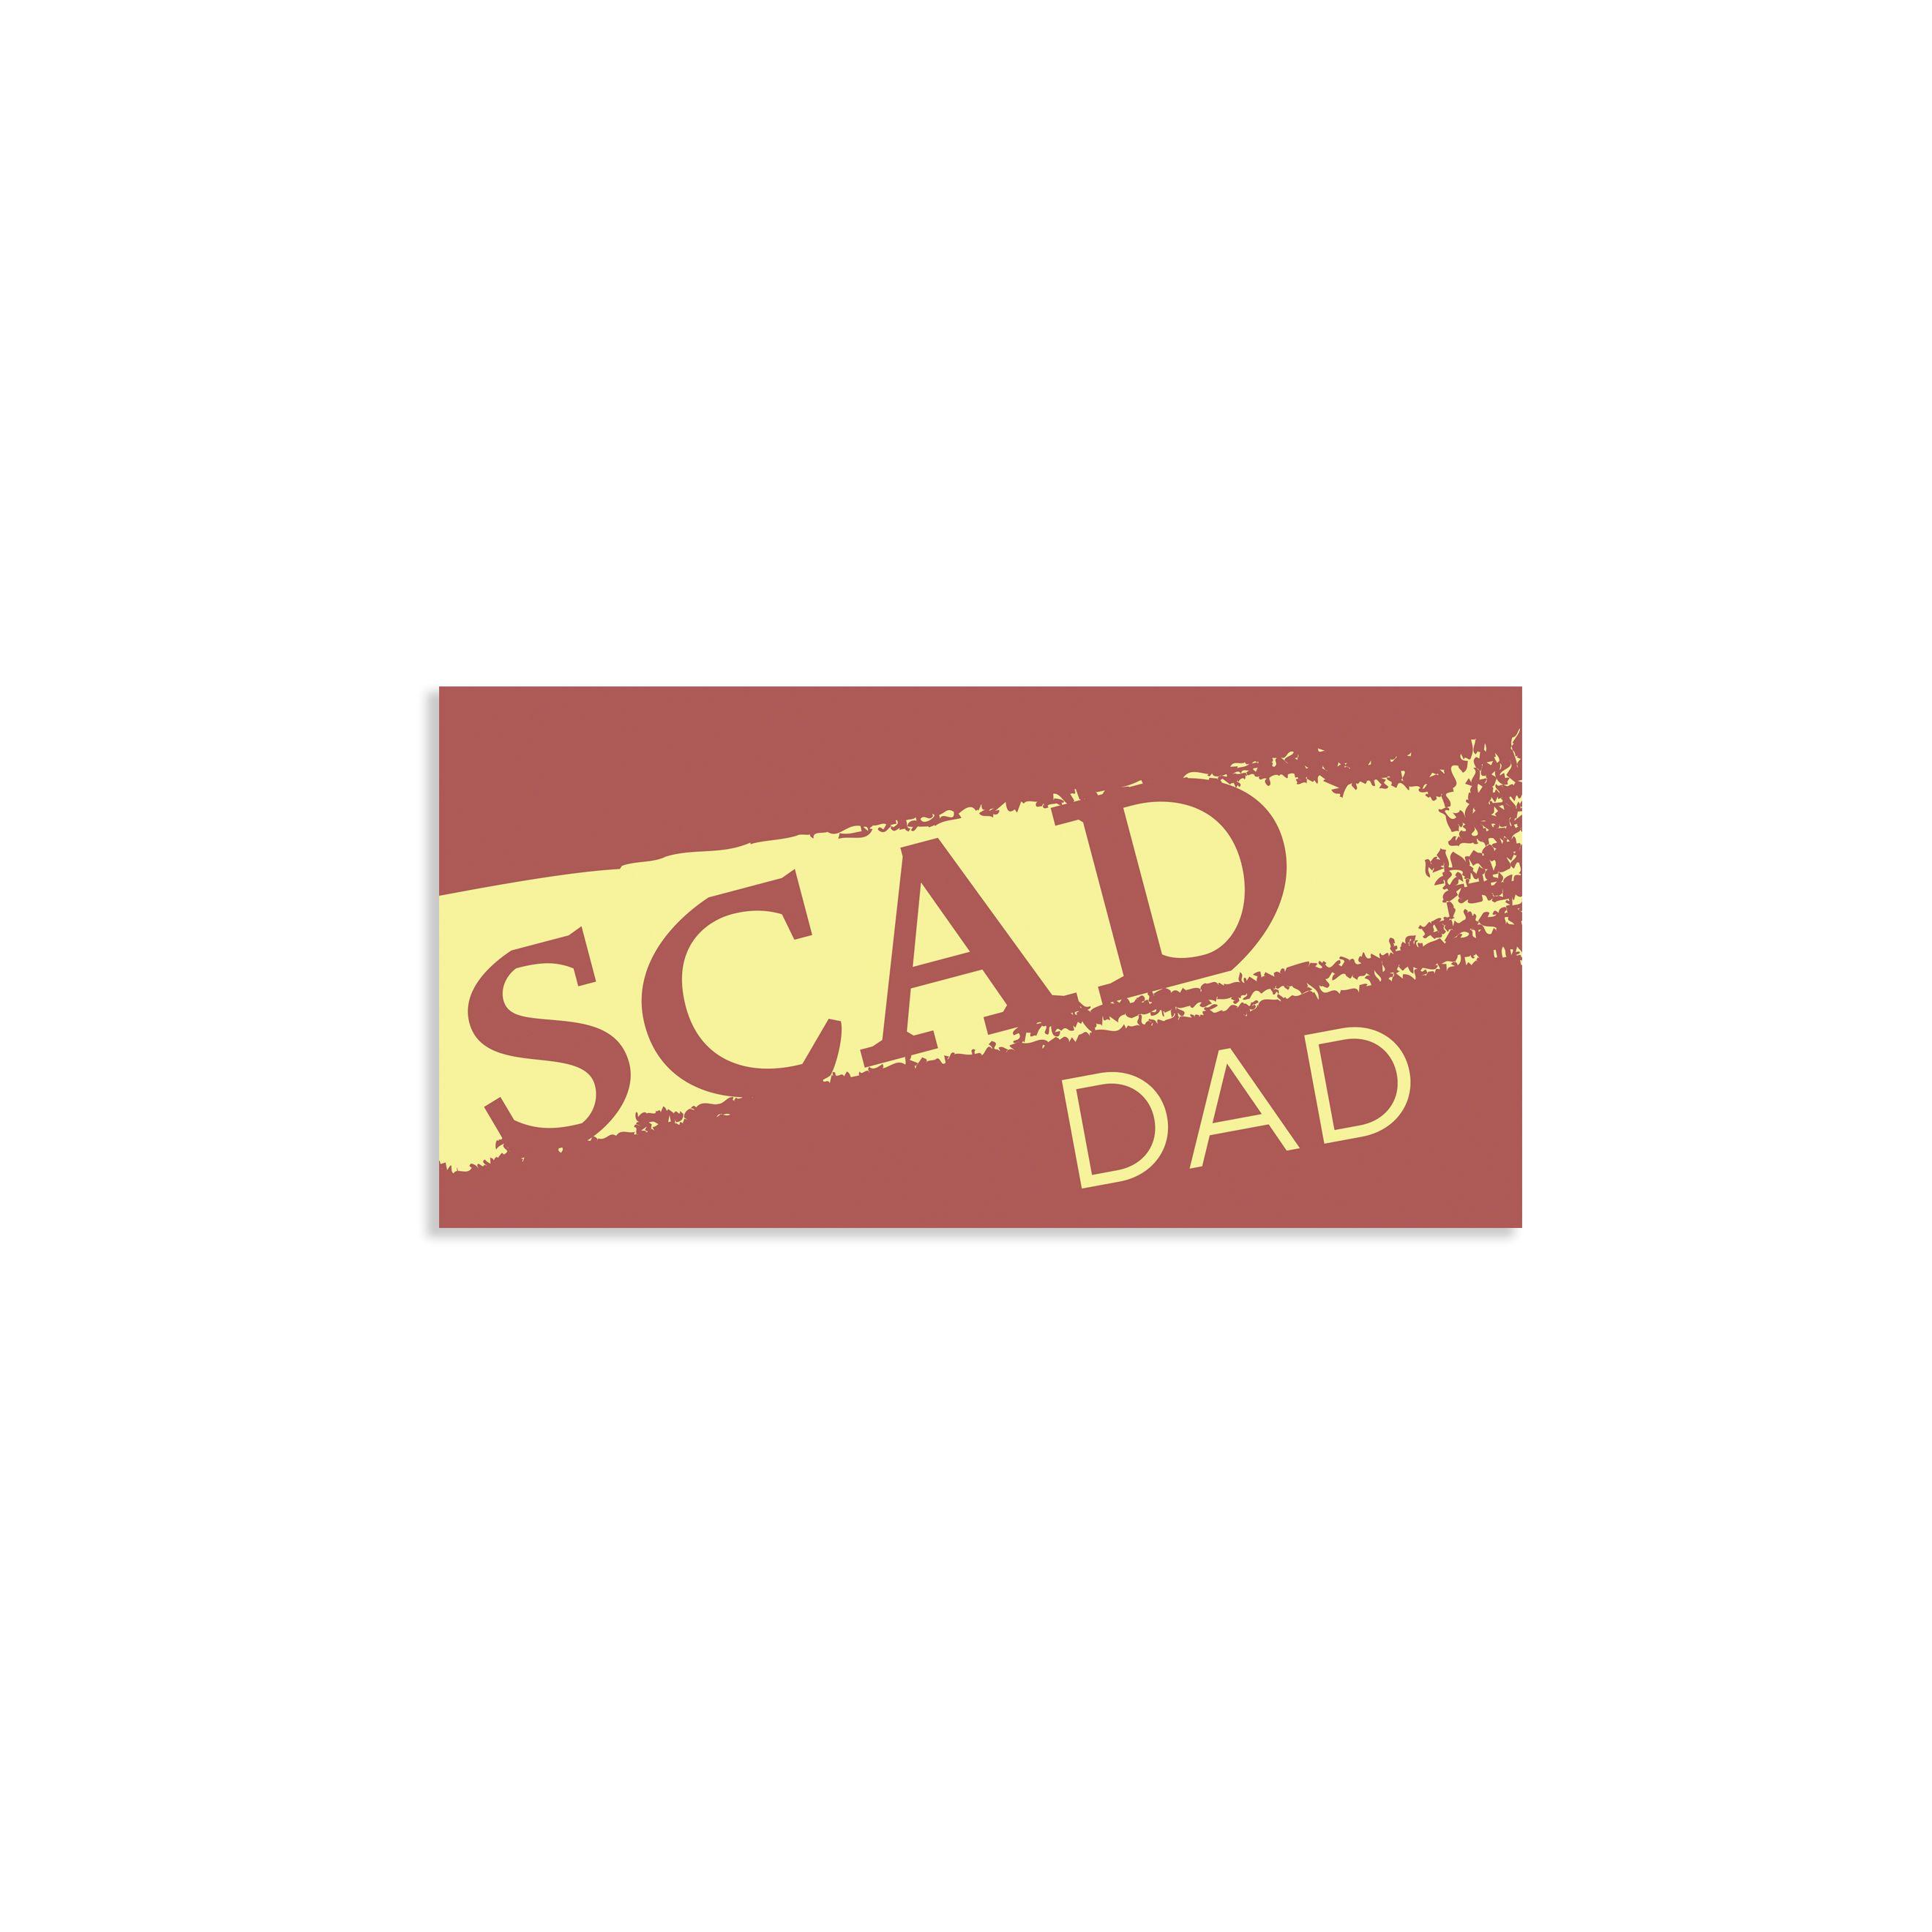 Maroon Rectangular Logo - SCAD Dad Rectangular Maroon and Yellow Decal